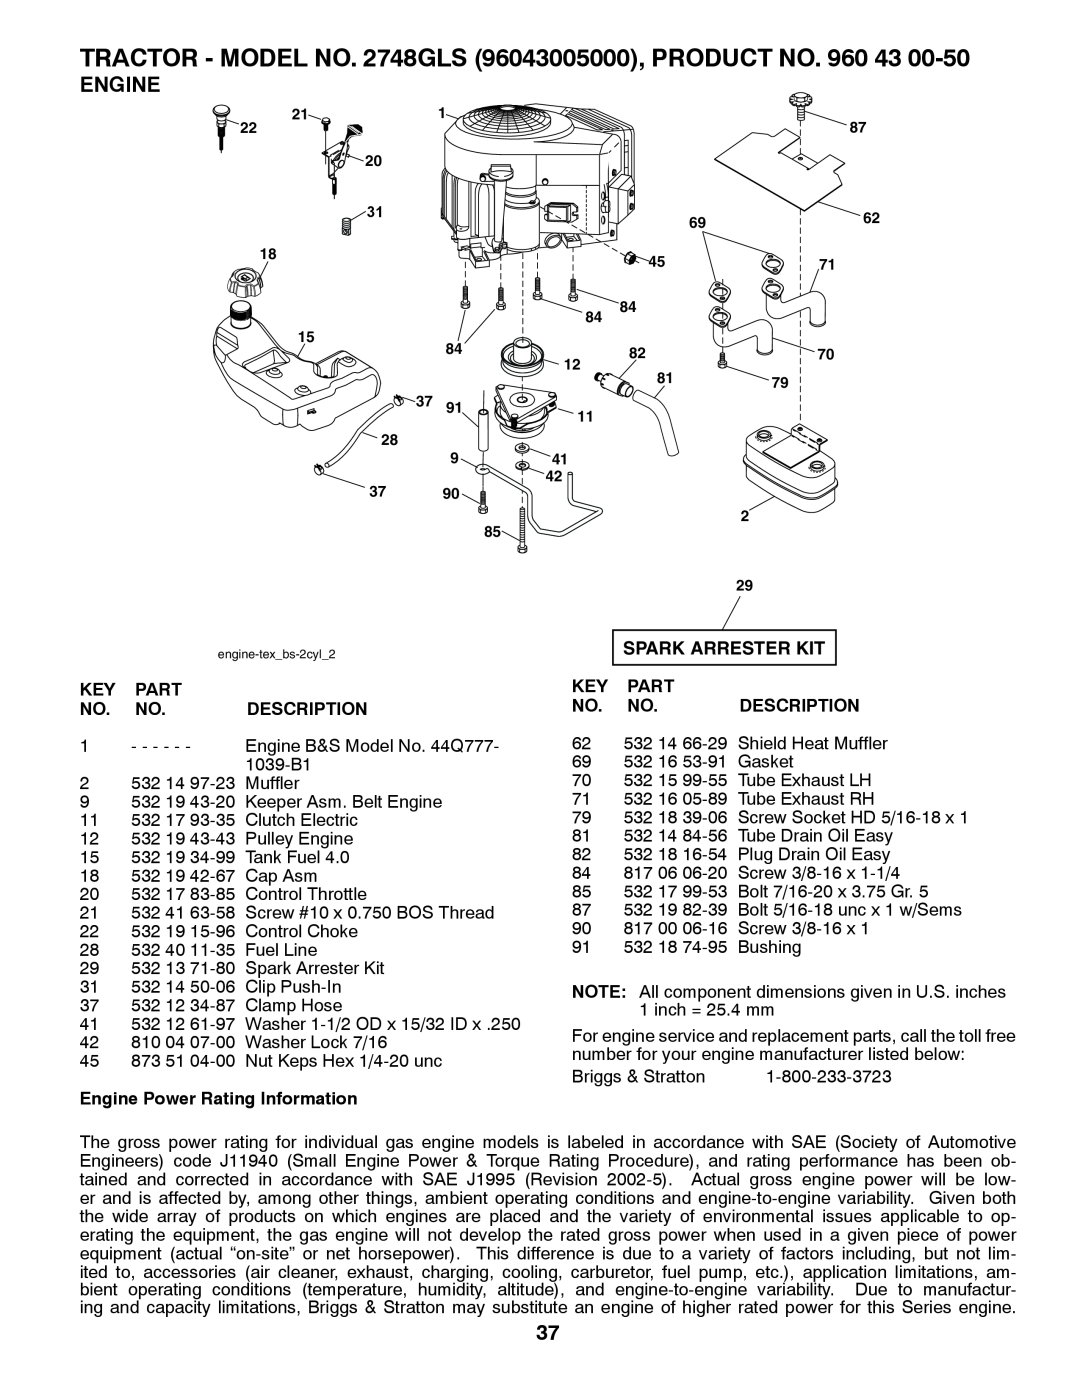 Husqvarna 2748 GLS (CA) manual Spark Arrester Kit, Part, Description, Engine Power Rating Information 